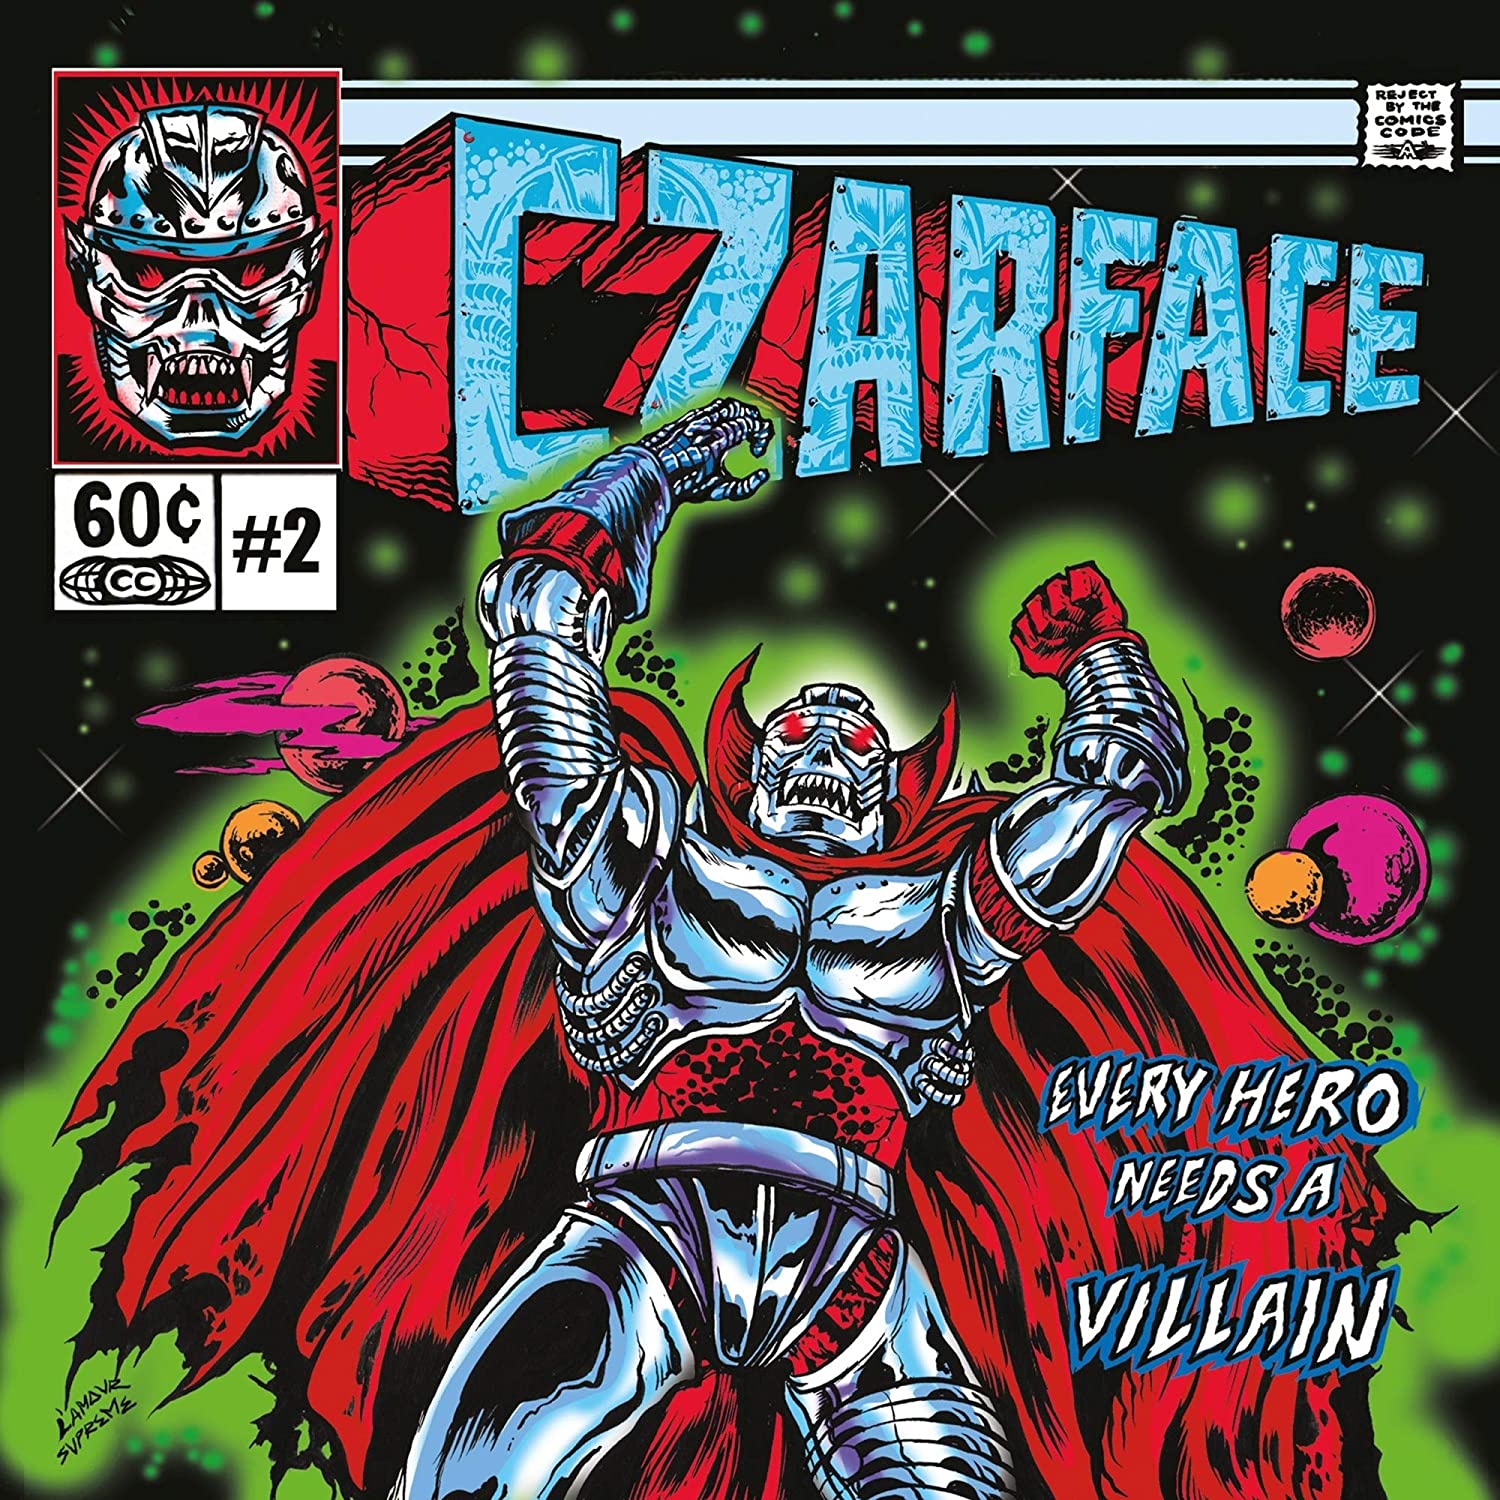 CZARFACE - Every Hero Needs A Villain pour la Deadperle de Uiltje